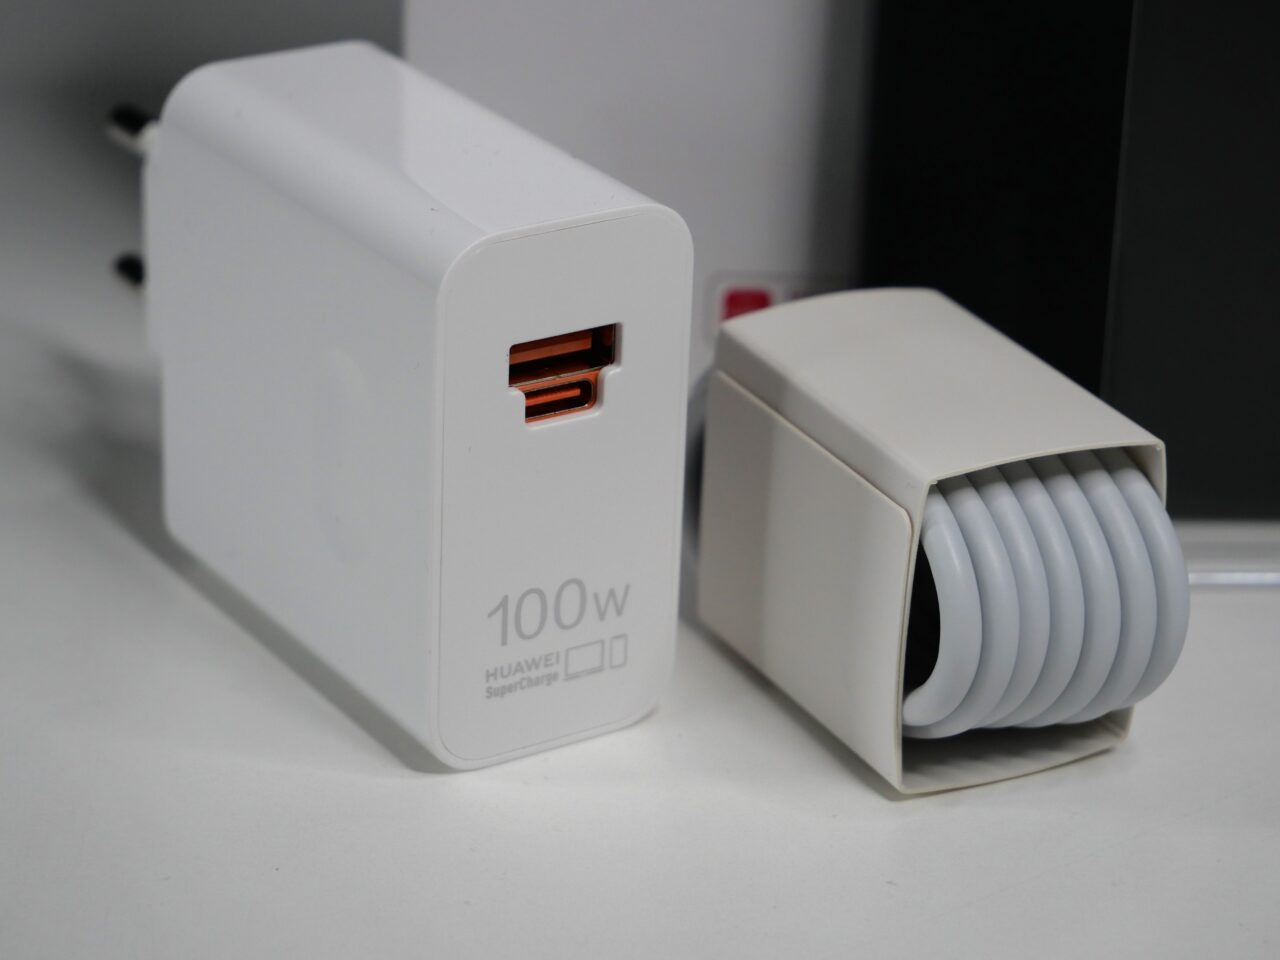 Biała ładowarka Huawei 100W SuperCharge z portem USB-C i zwinięty kabel.